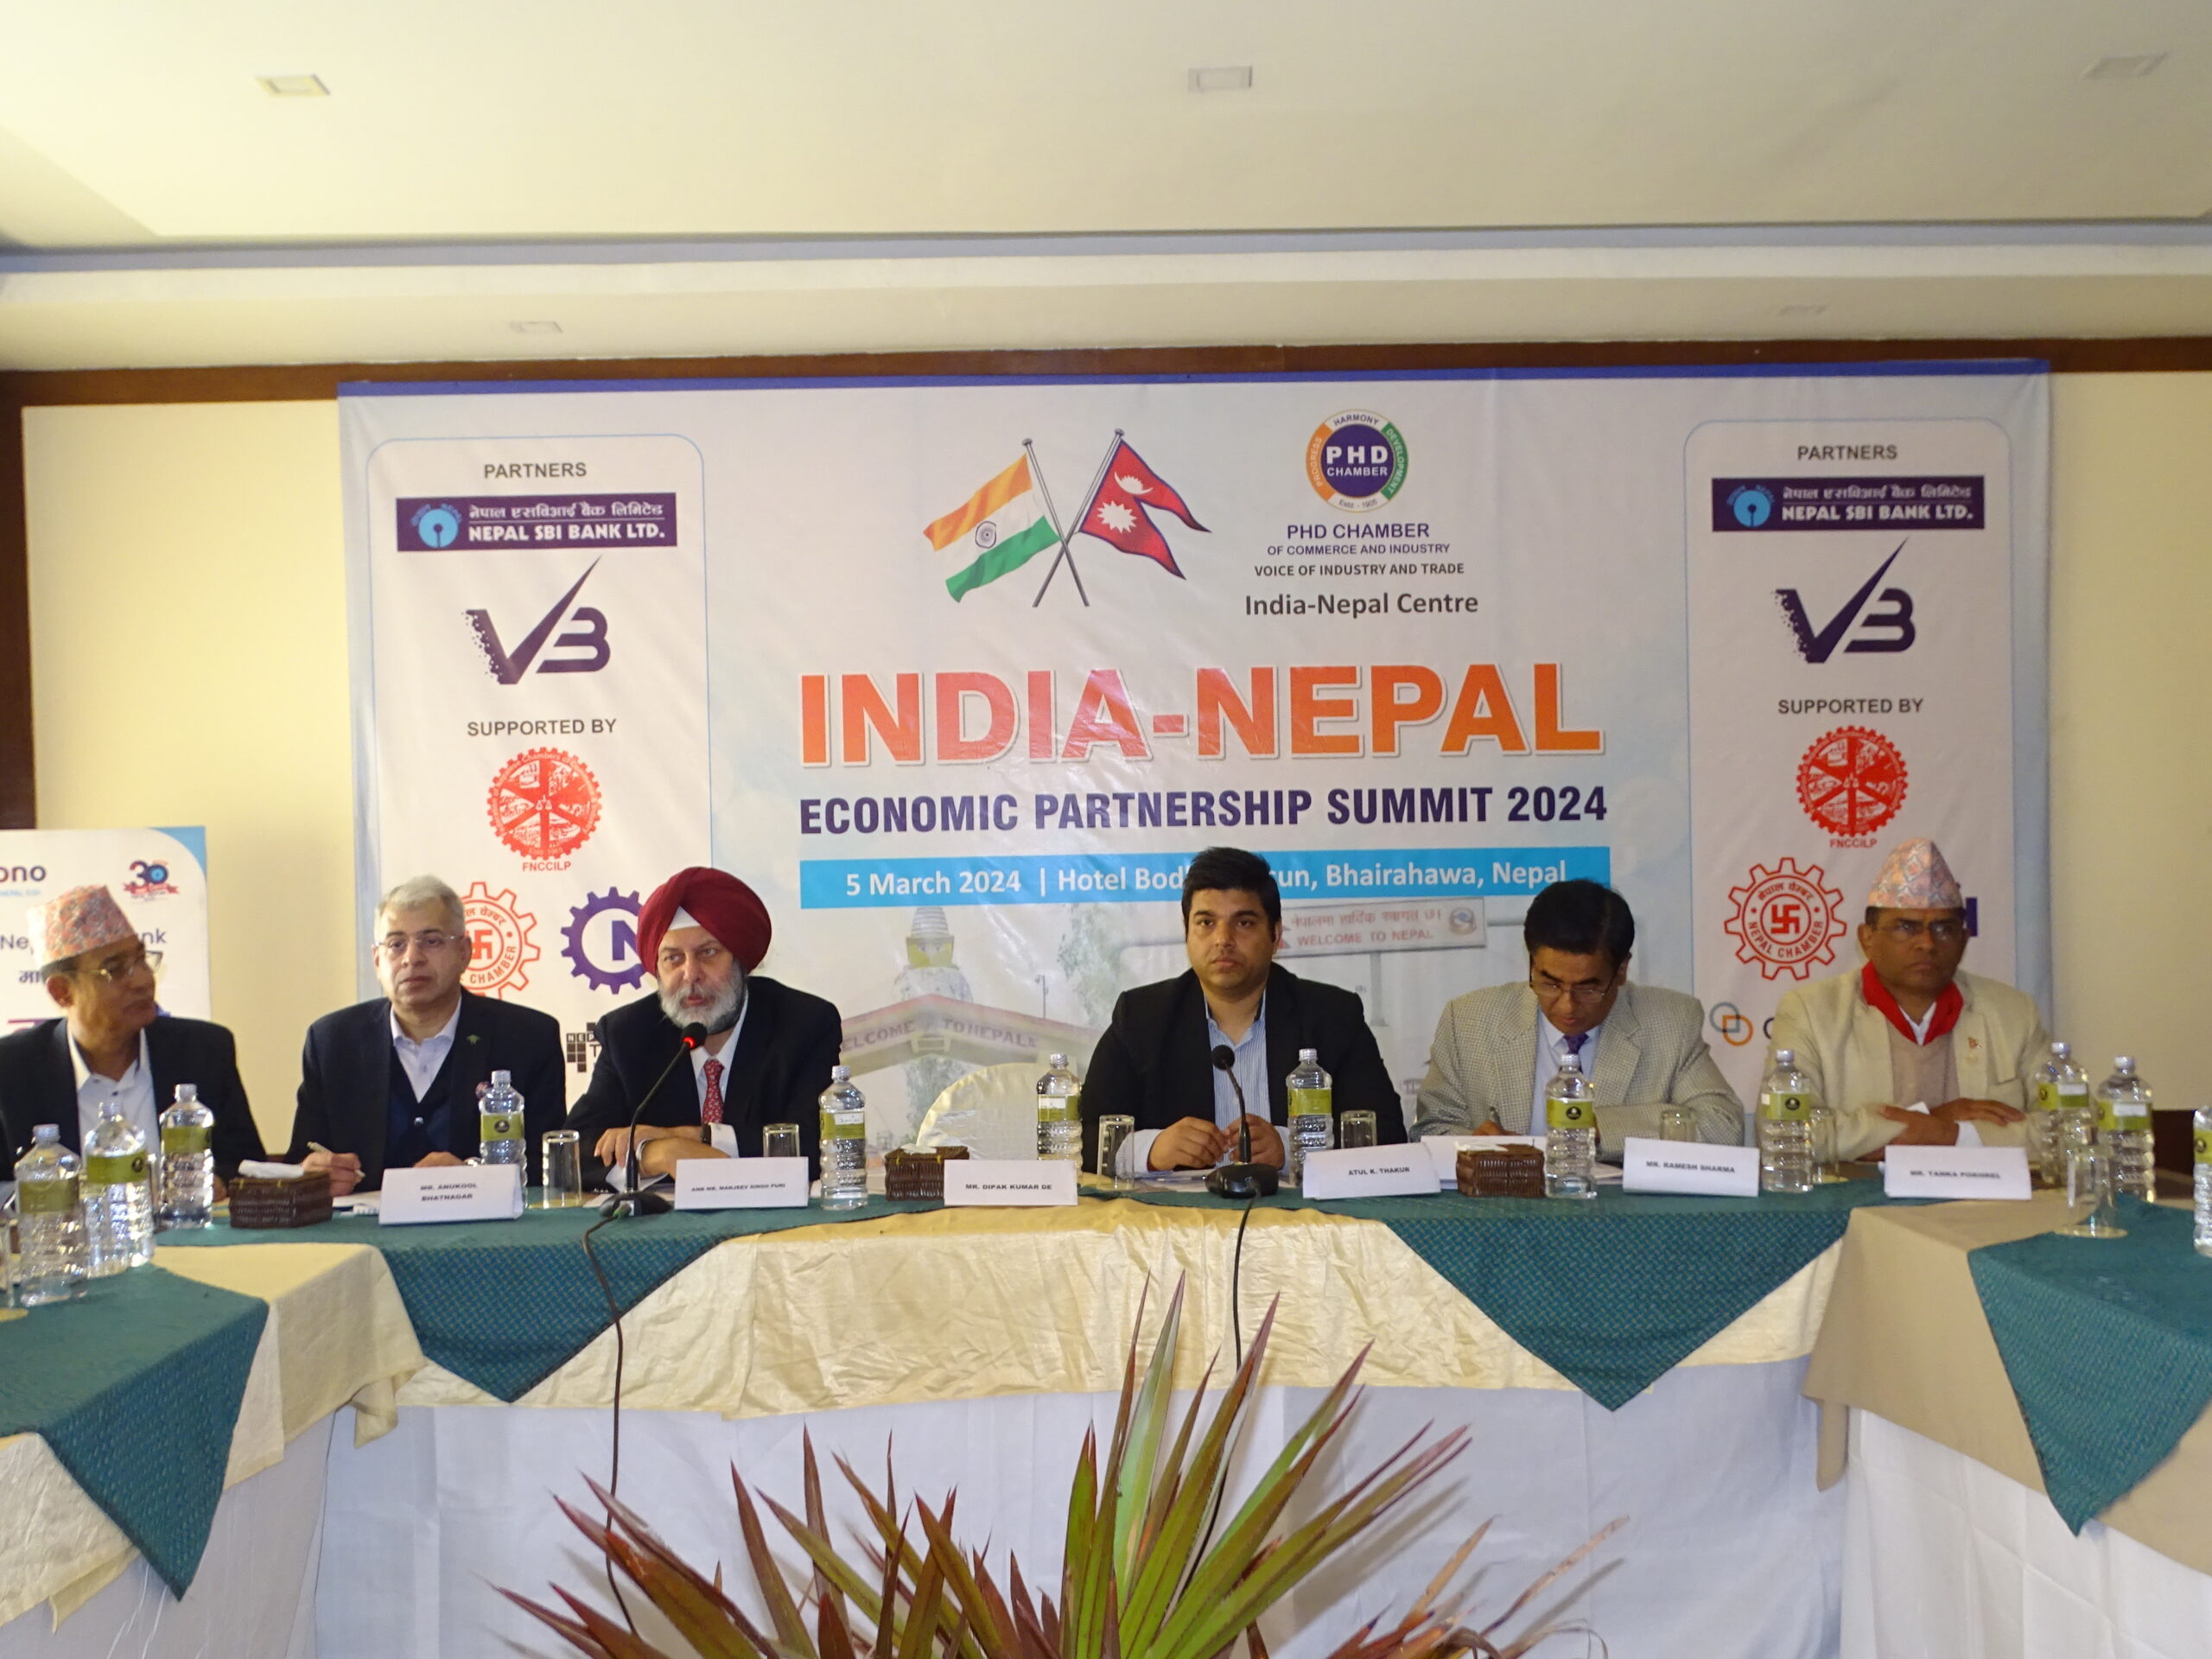 भैरहवामा भारत–नेपाल आर्थिक साझेदारी शिखर सम्मेलन